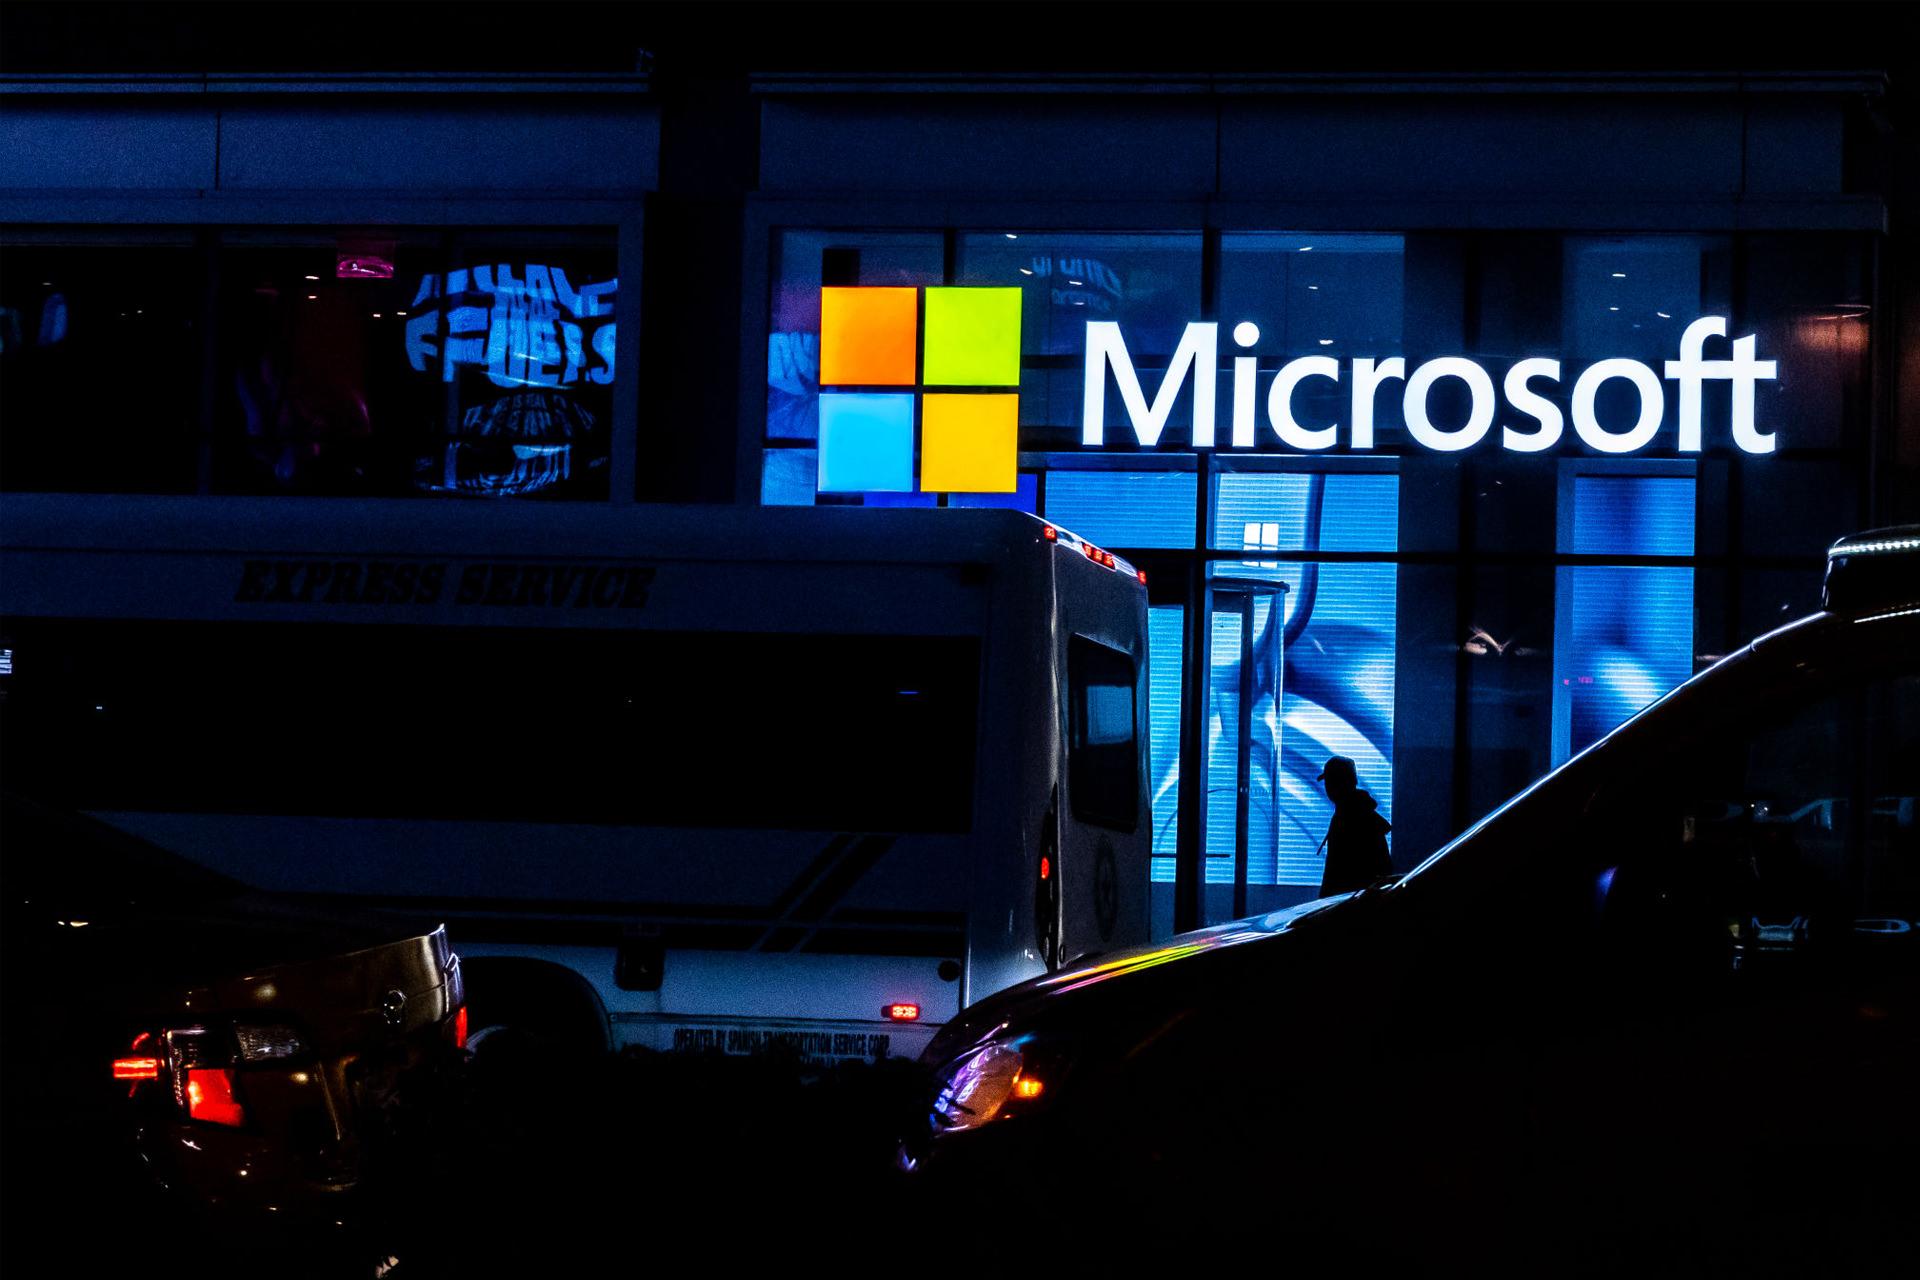 لوگو مایکروسافت / Microsoft روی ورودی ساختمان در شب